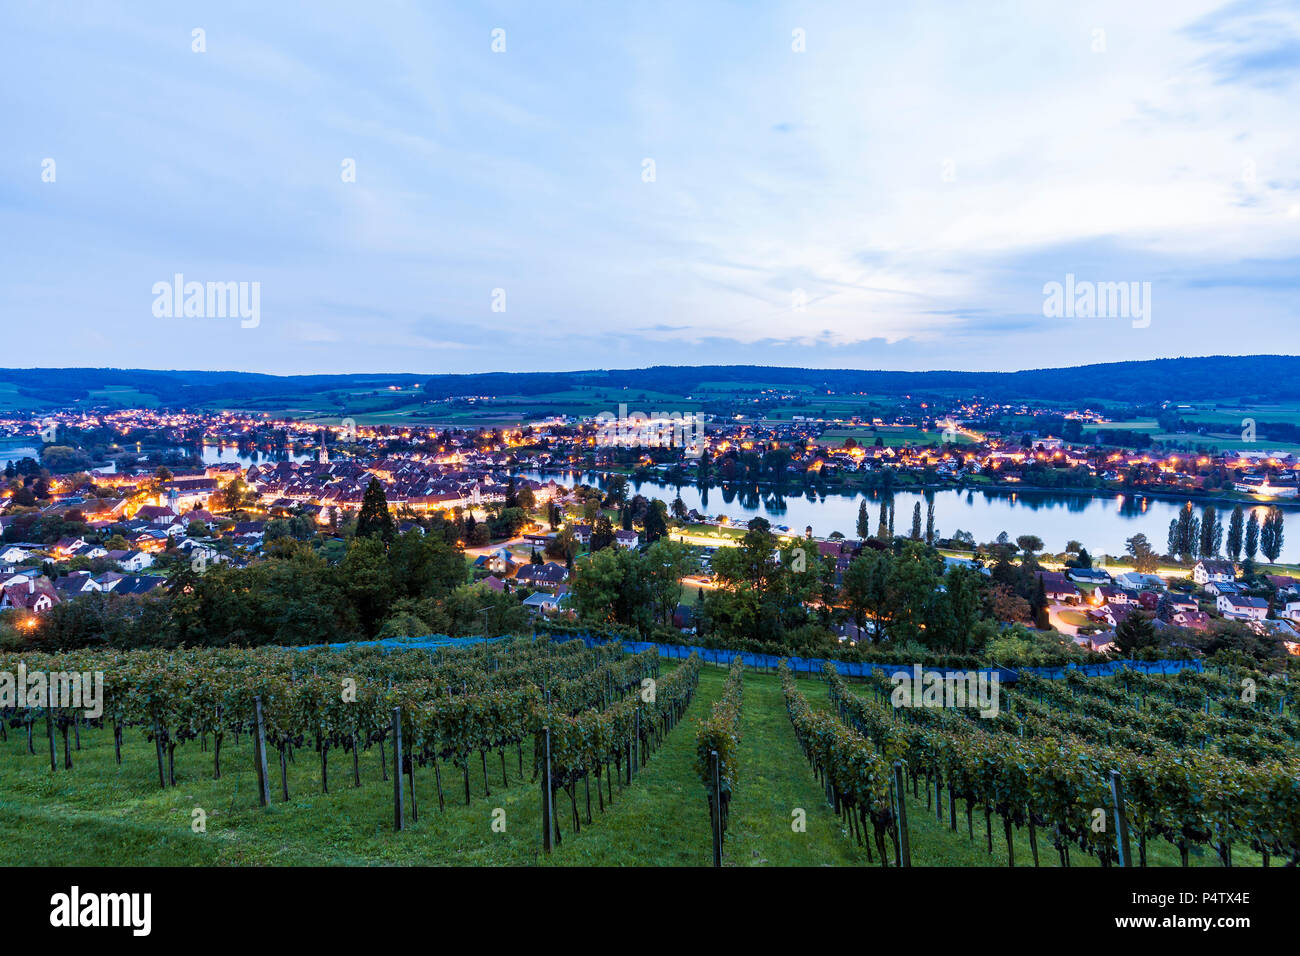 La Suisse, canton de Schaffhouse, Stein am Rhein, le lac de Constance, le Rhin, paysage urbain dans la soirée Banque D'Images